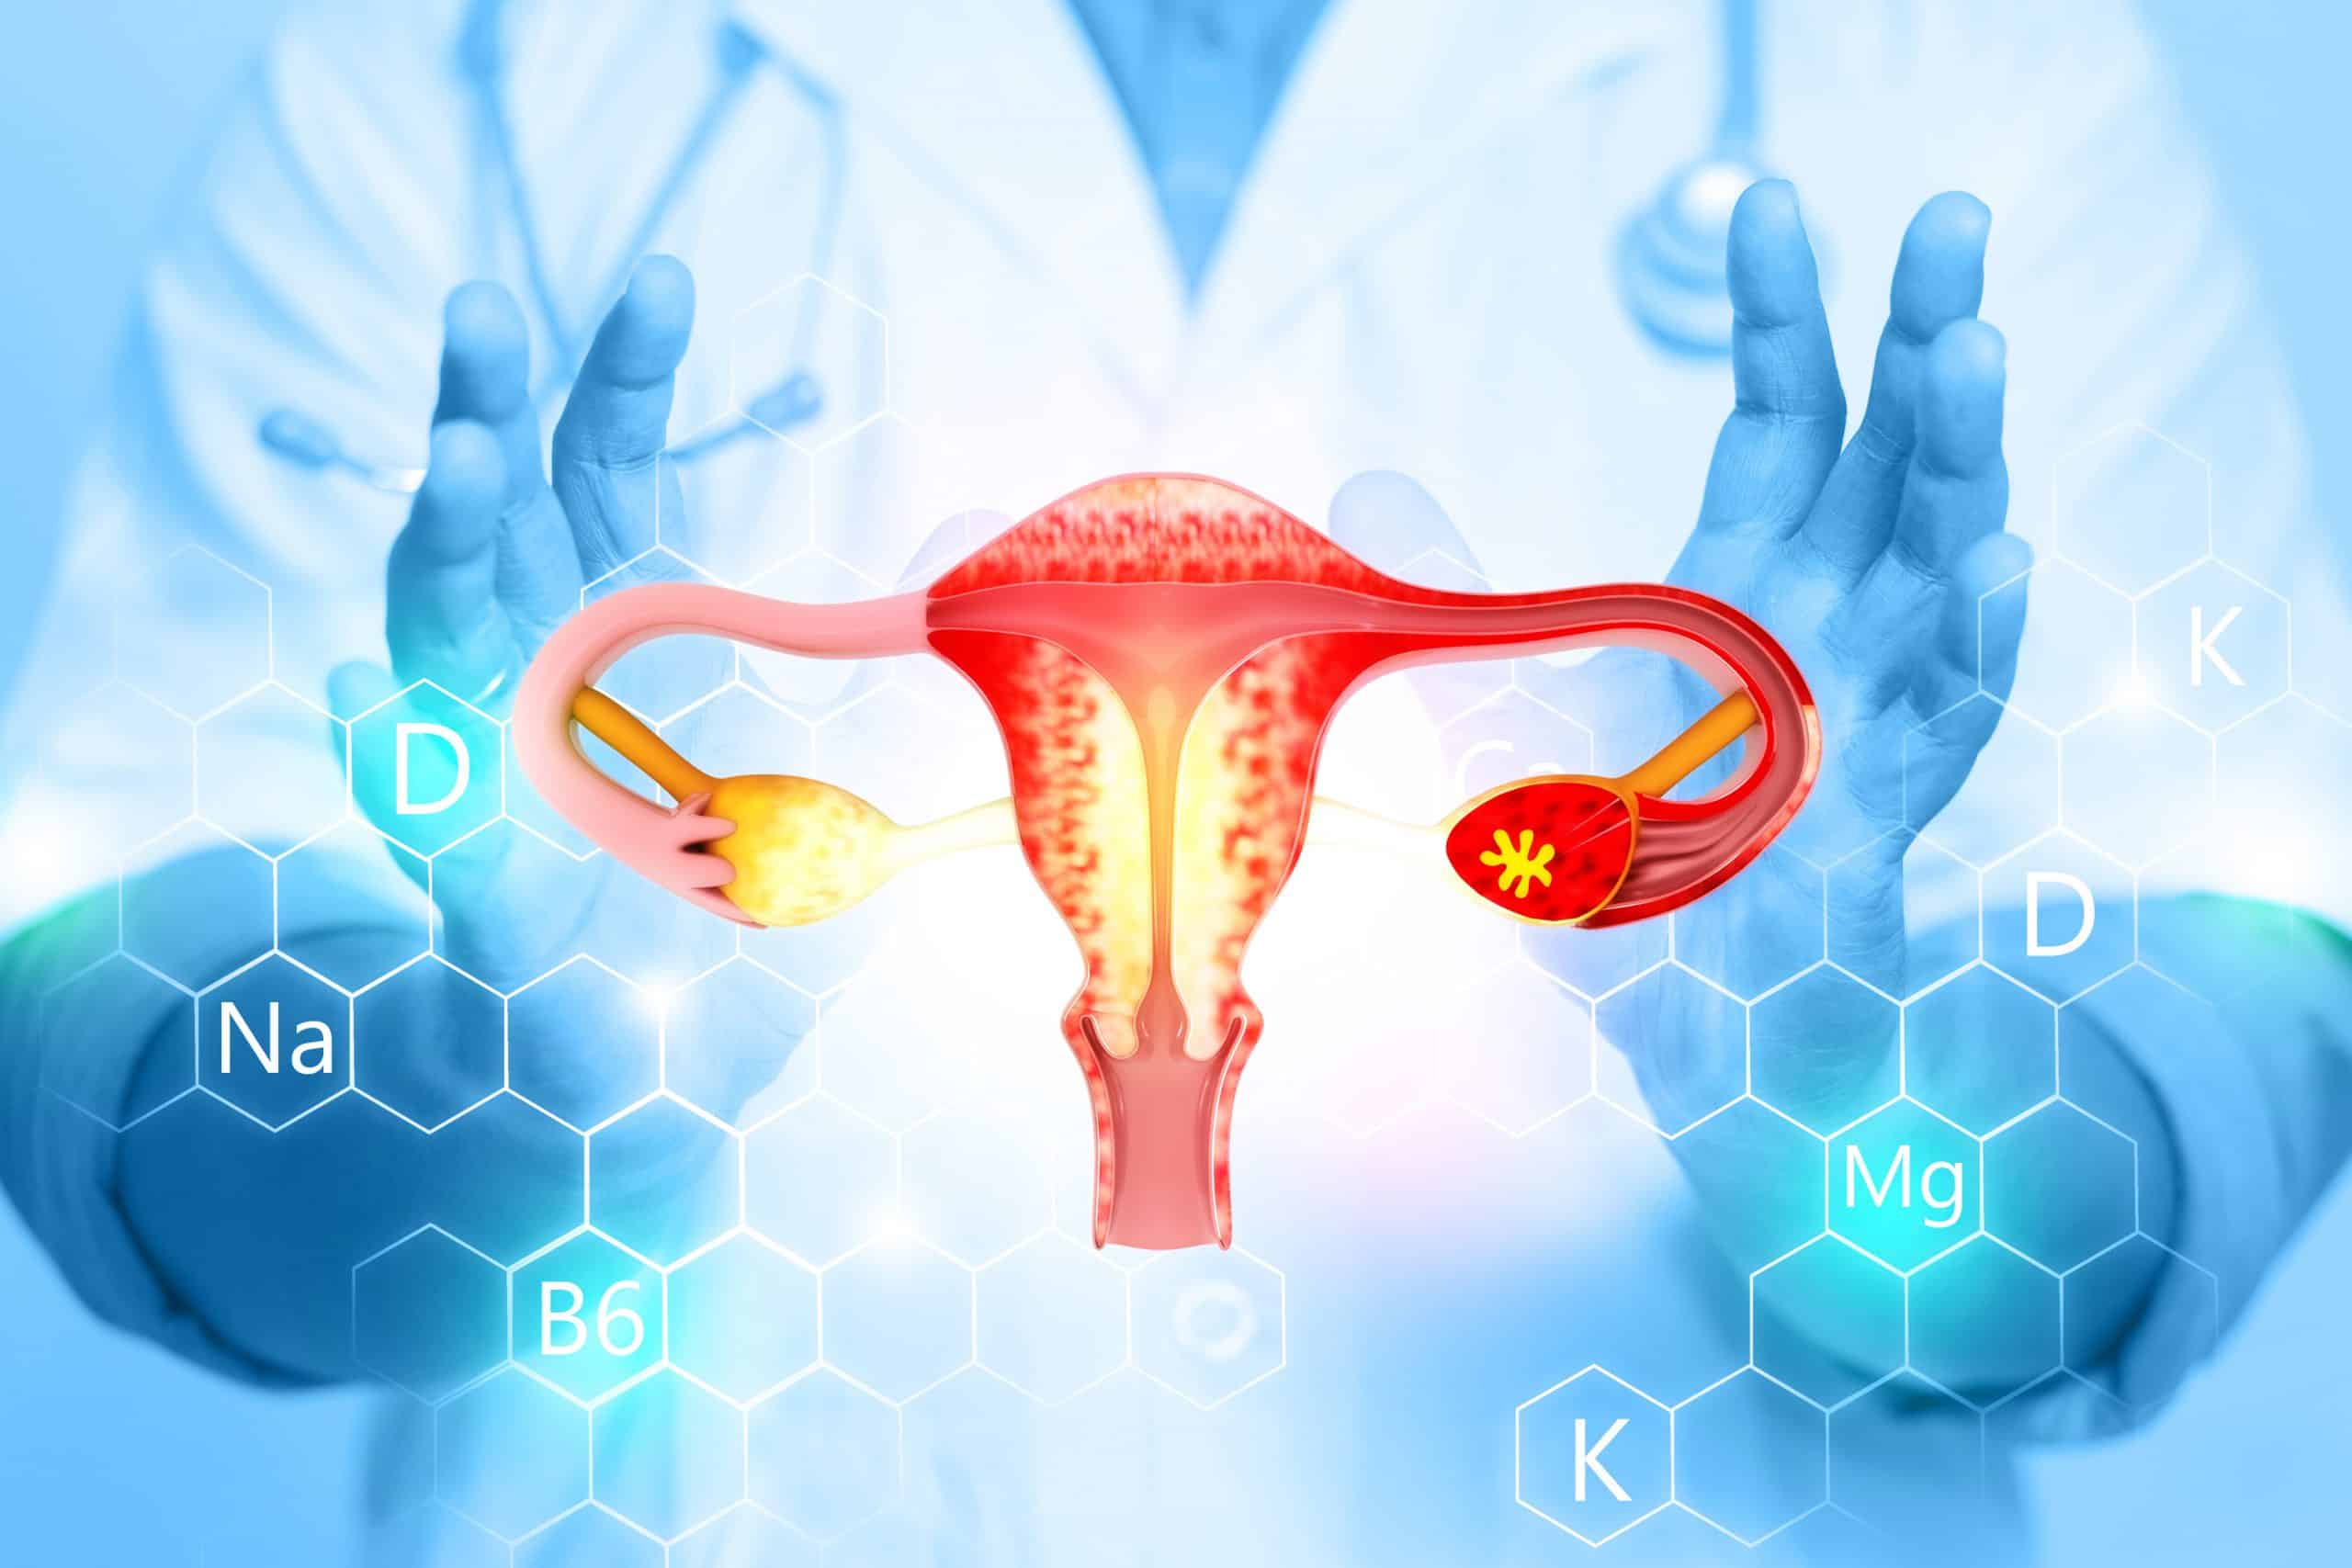 Cáncer de endometrio un nuevo test realizado en casa detecta casi el 100% de los casos